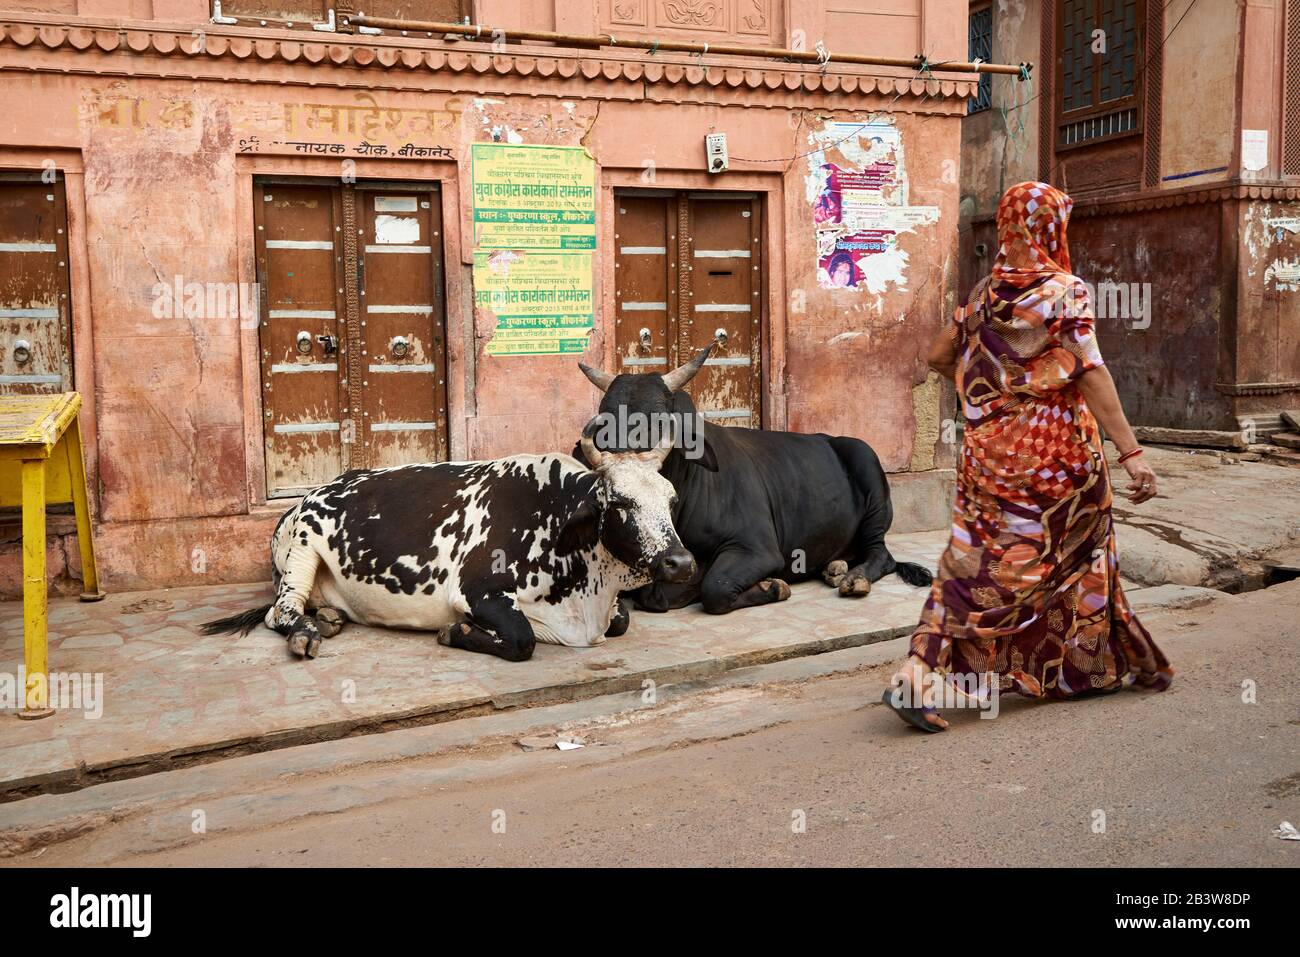 Les vaches saintes se trouvent dans la rue de Bikaner, Rajasthan, Inde Banque D'Images